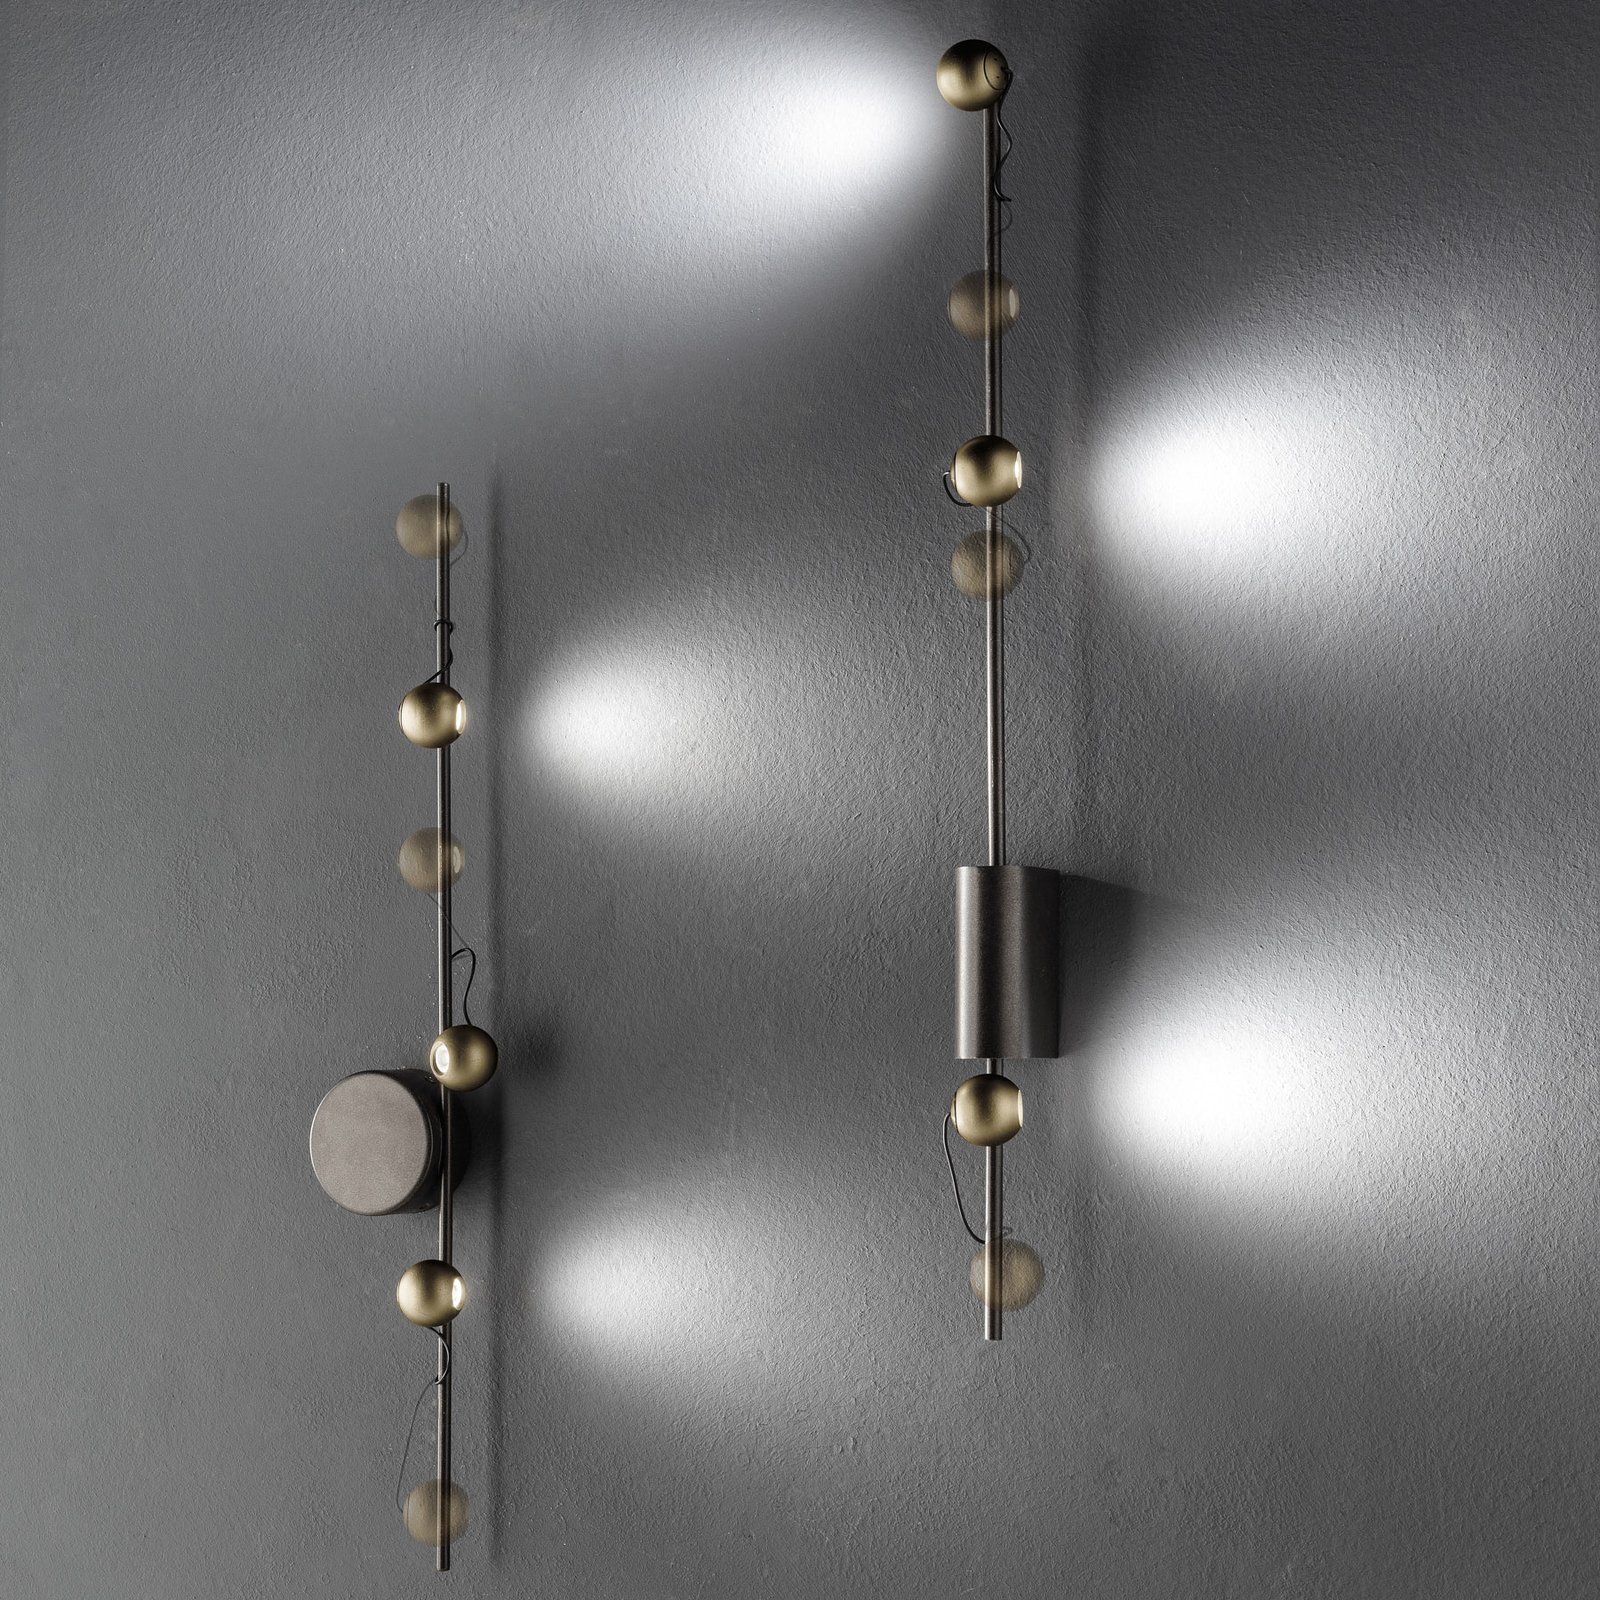 LED-vägglampa Magnetic C, brons/guld